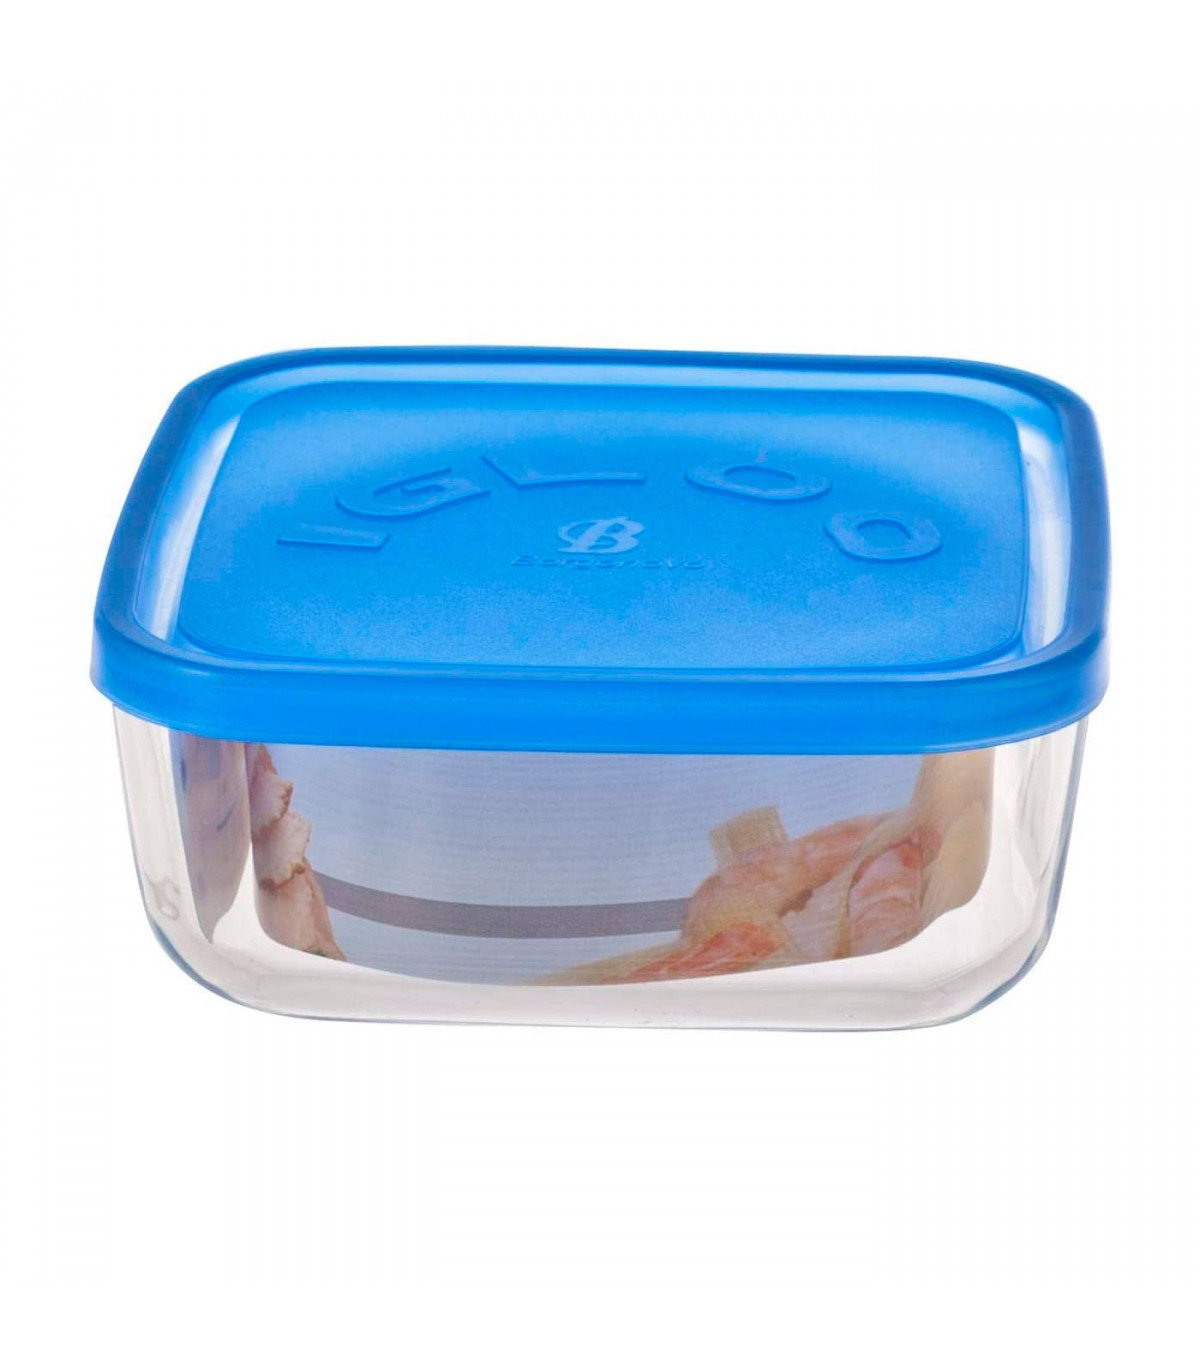 https://tradineur.com/46861-superlarge_default/fiambrera-cuadrada-de-vidrio-15-x-15-x-62-cm-modelo-igloo-tapa-de-plastico-azul-recipiente-para-alimentos-apto-para-lavavajillas.jpg